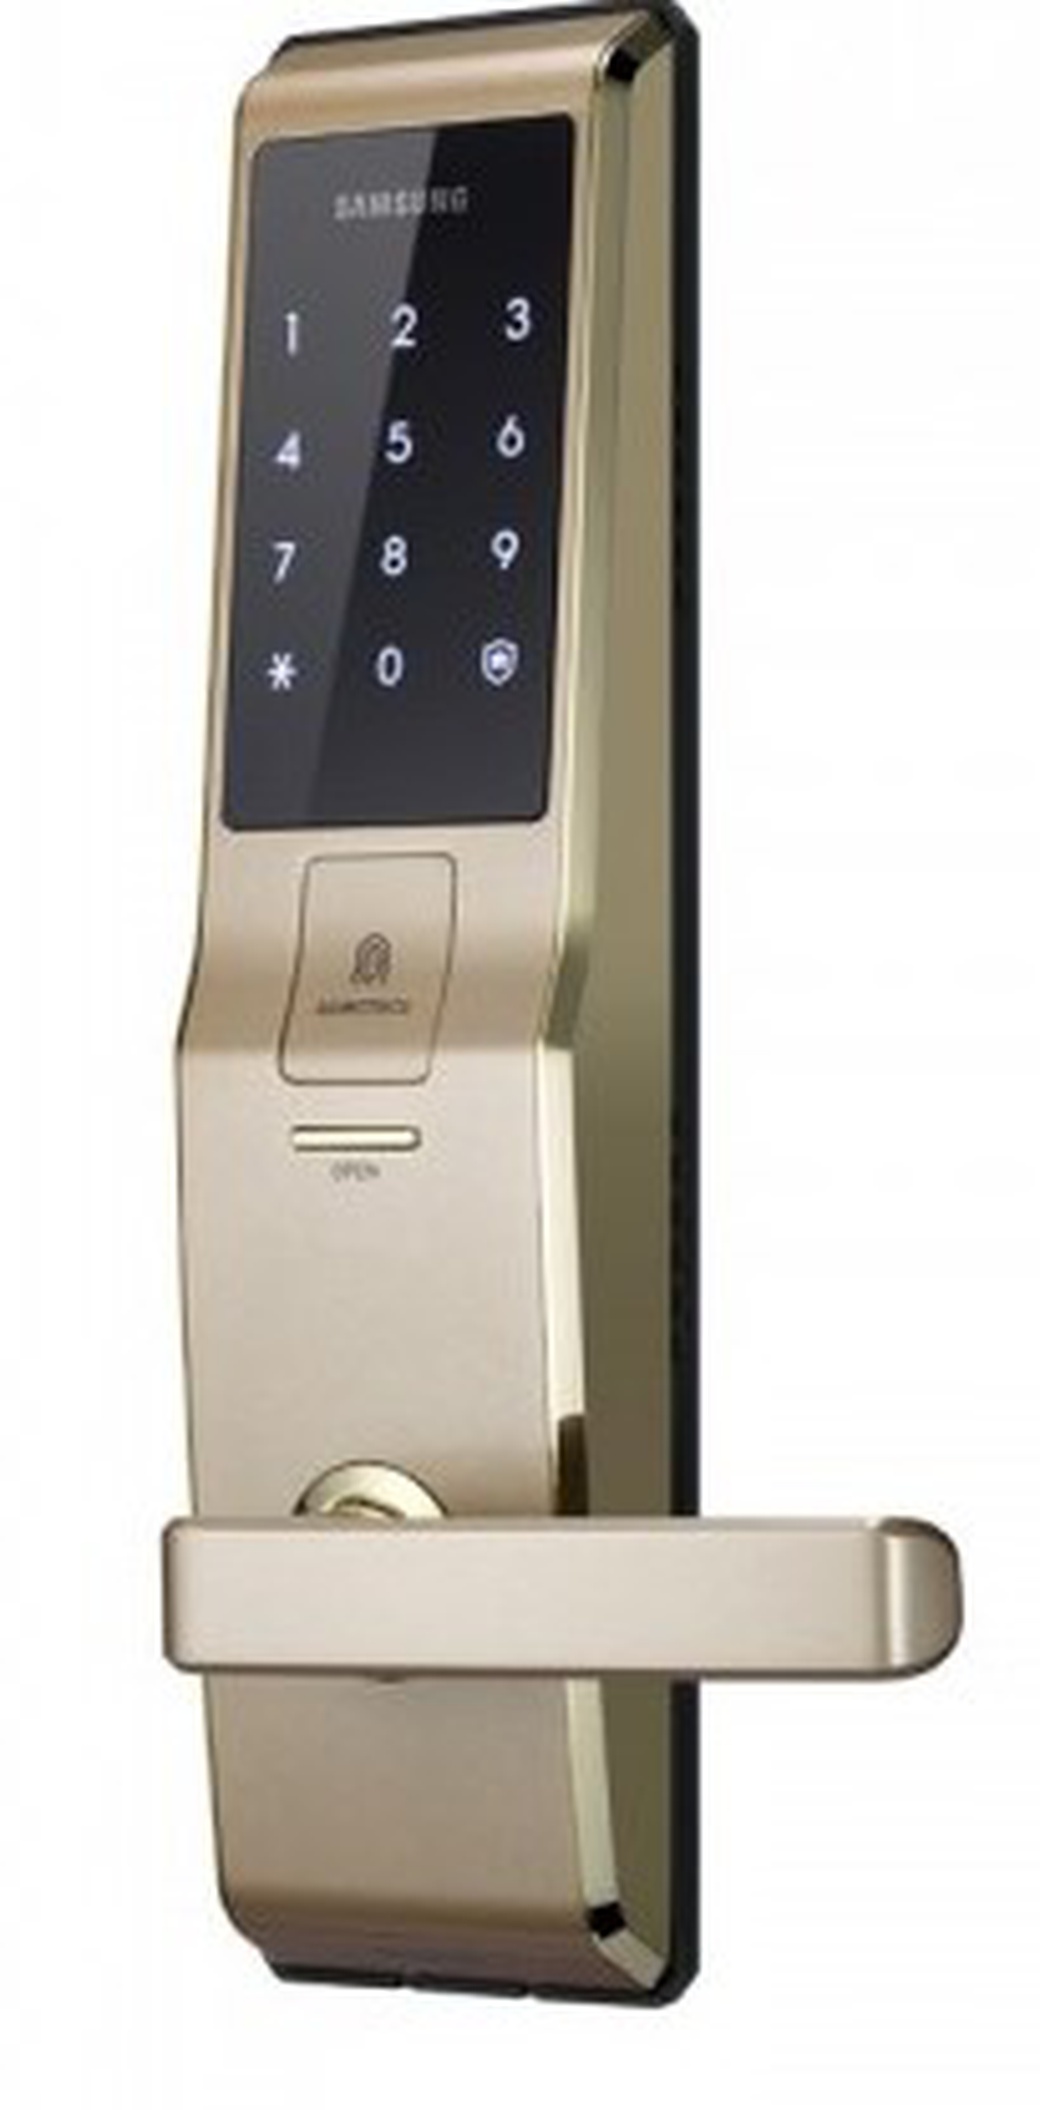 Замок дверной Samsung SHS-H705 FBG/EN (5230) золото (gold) биометрический, врезной, с ручкой фото